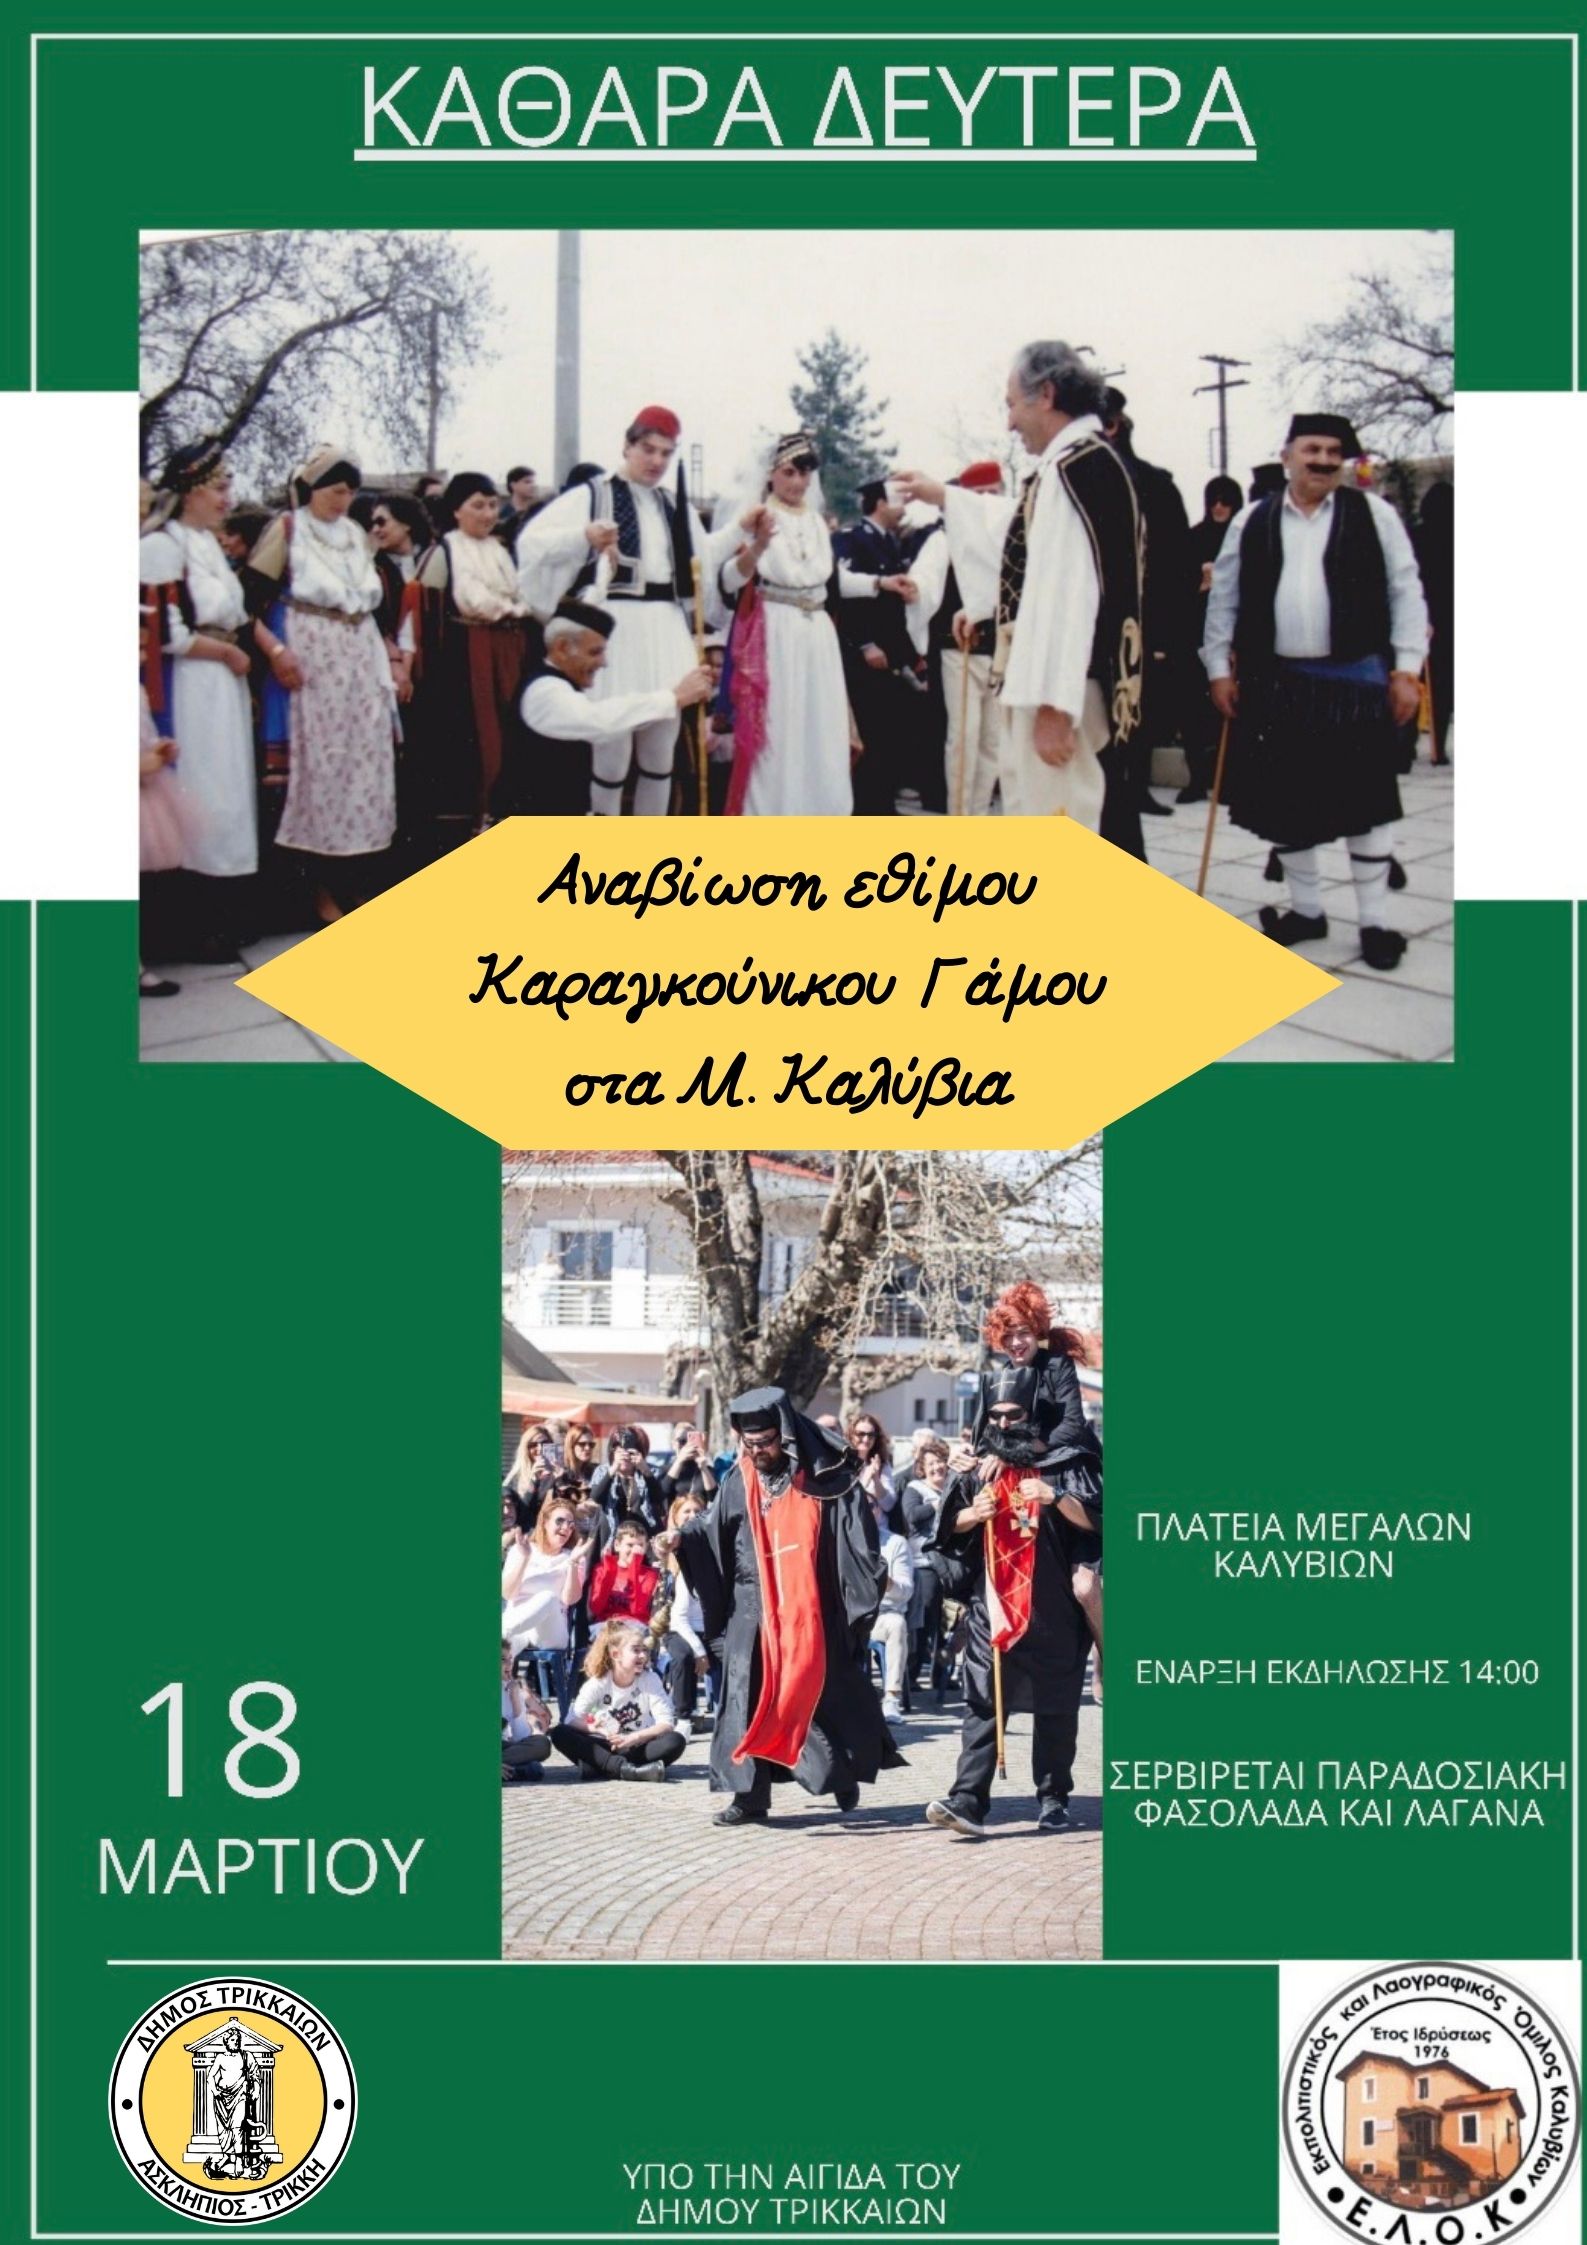 Αναβιώνει το έθιμο του Καραγκούνικου Γάμου στα Μ. Καλύβια